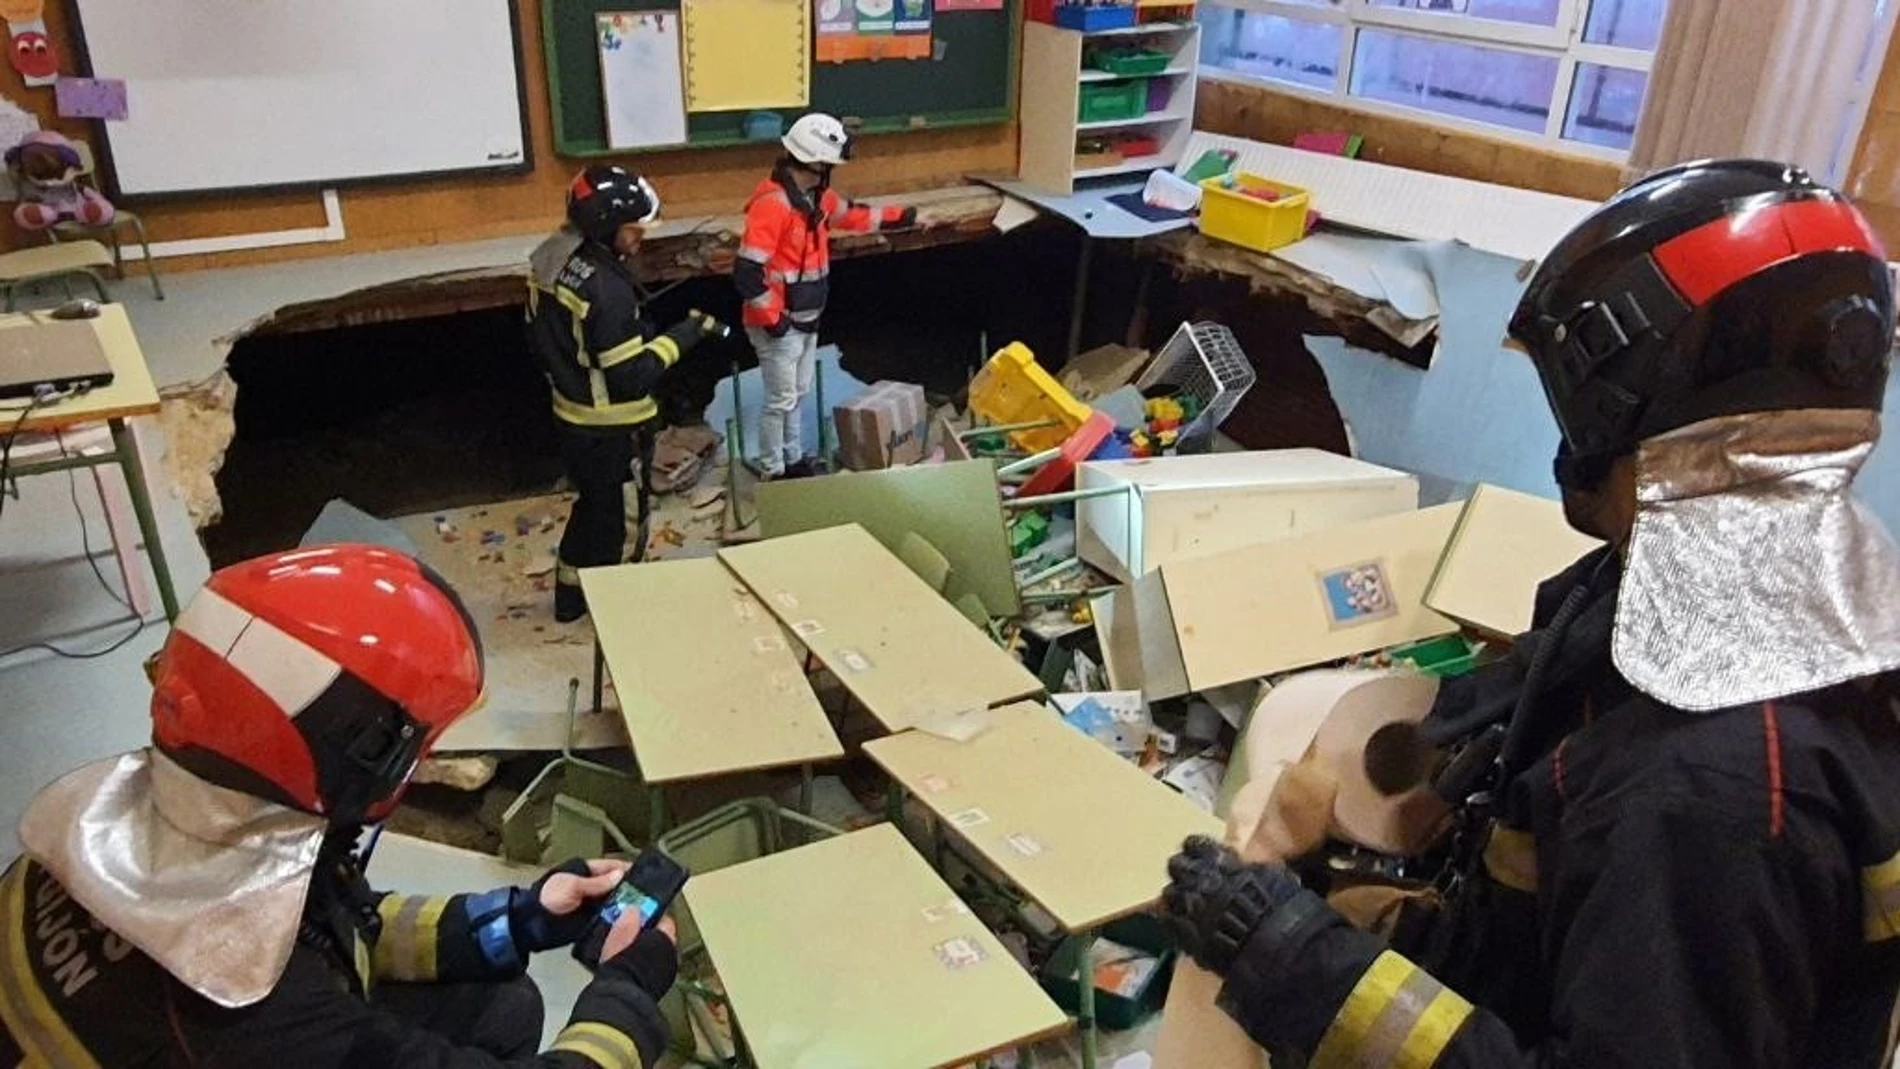 Bomberos de Gijón inspeccionan un aula de Infantil del colegio público Rey Pelayo tras derrumbarse el suelo, en Gijón